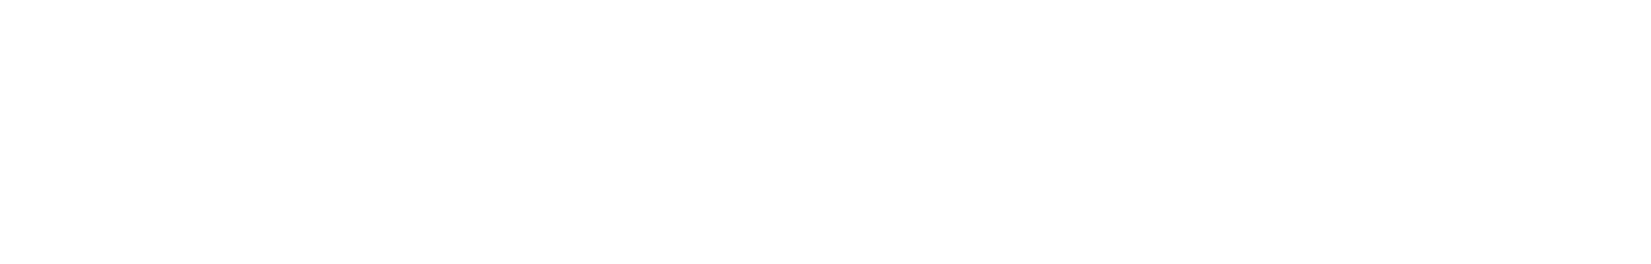 Speakerheavern Logo - light version - Design by InitBox UG